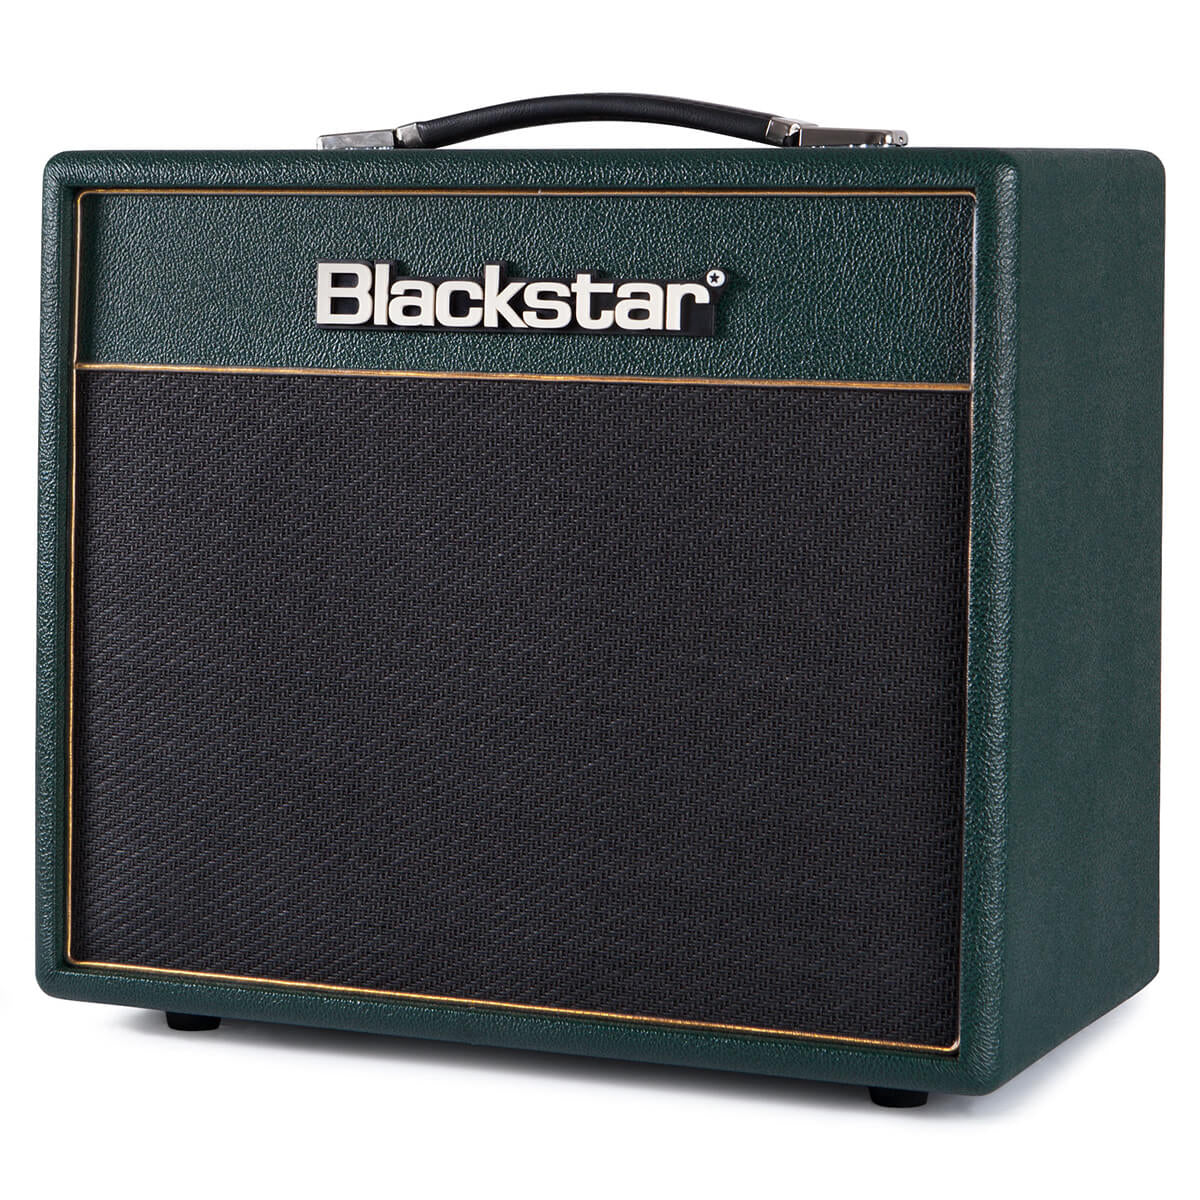 Blackstar Studio 10 KT88 Combo Amplifier